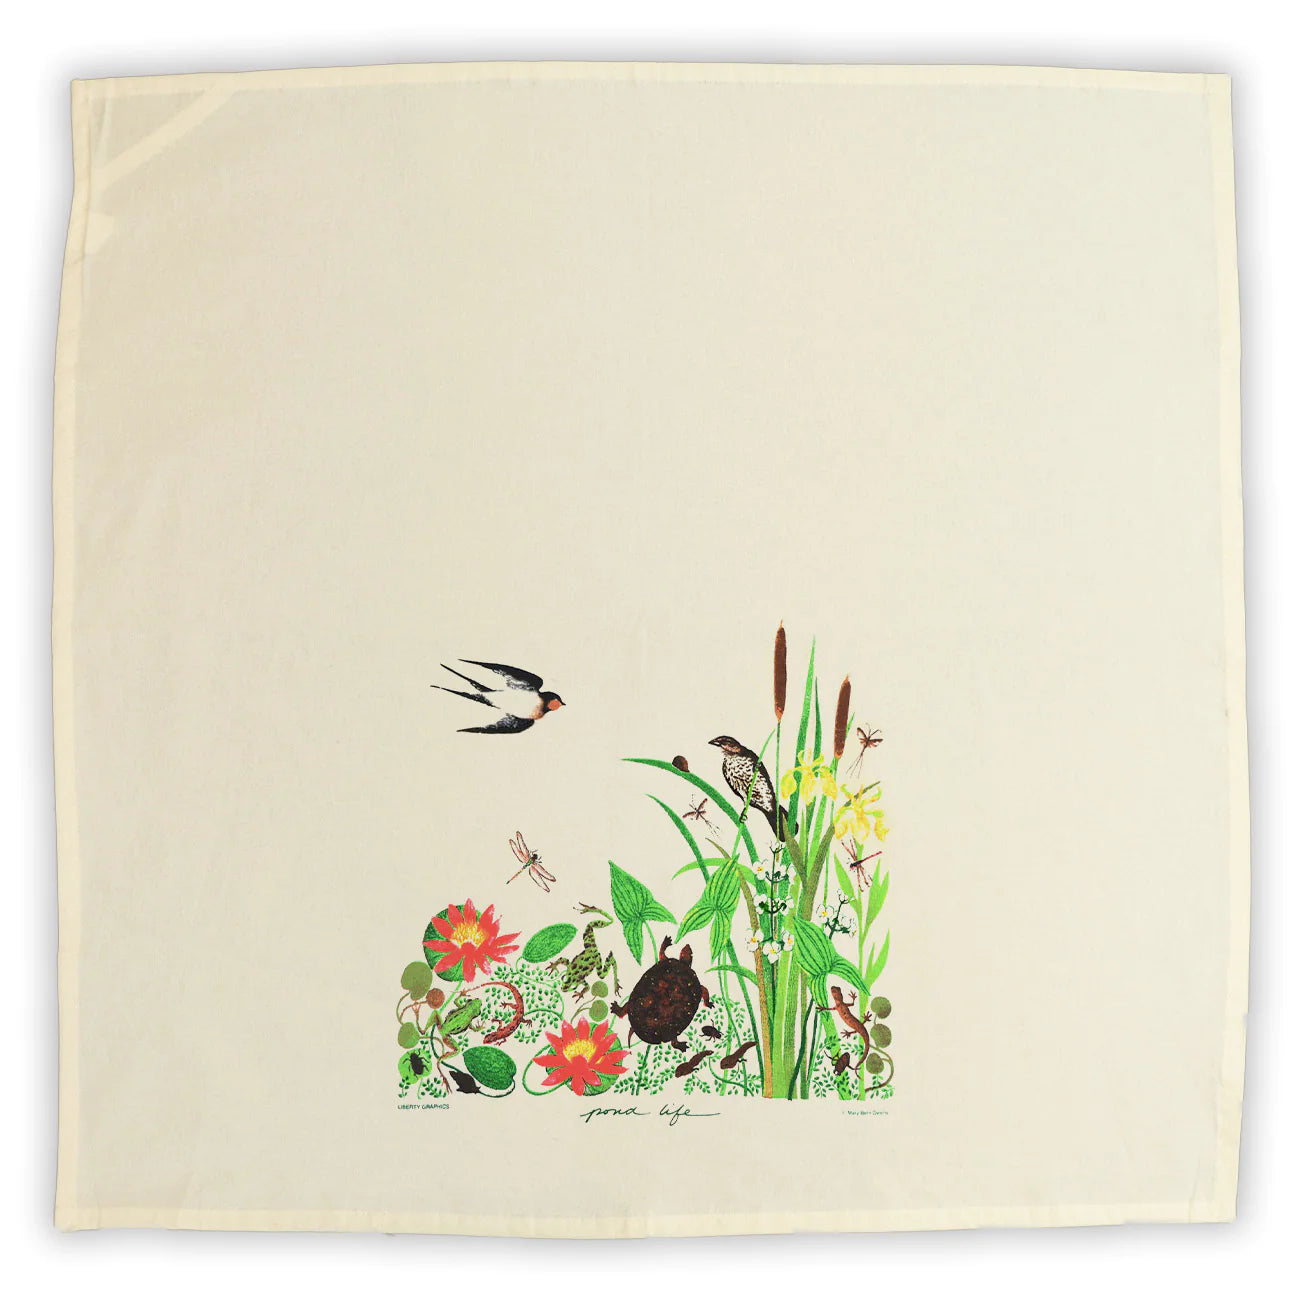 Pond Life - Flour Sack Tea Towel by Liberty Graphics